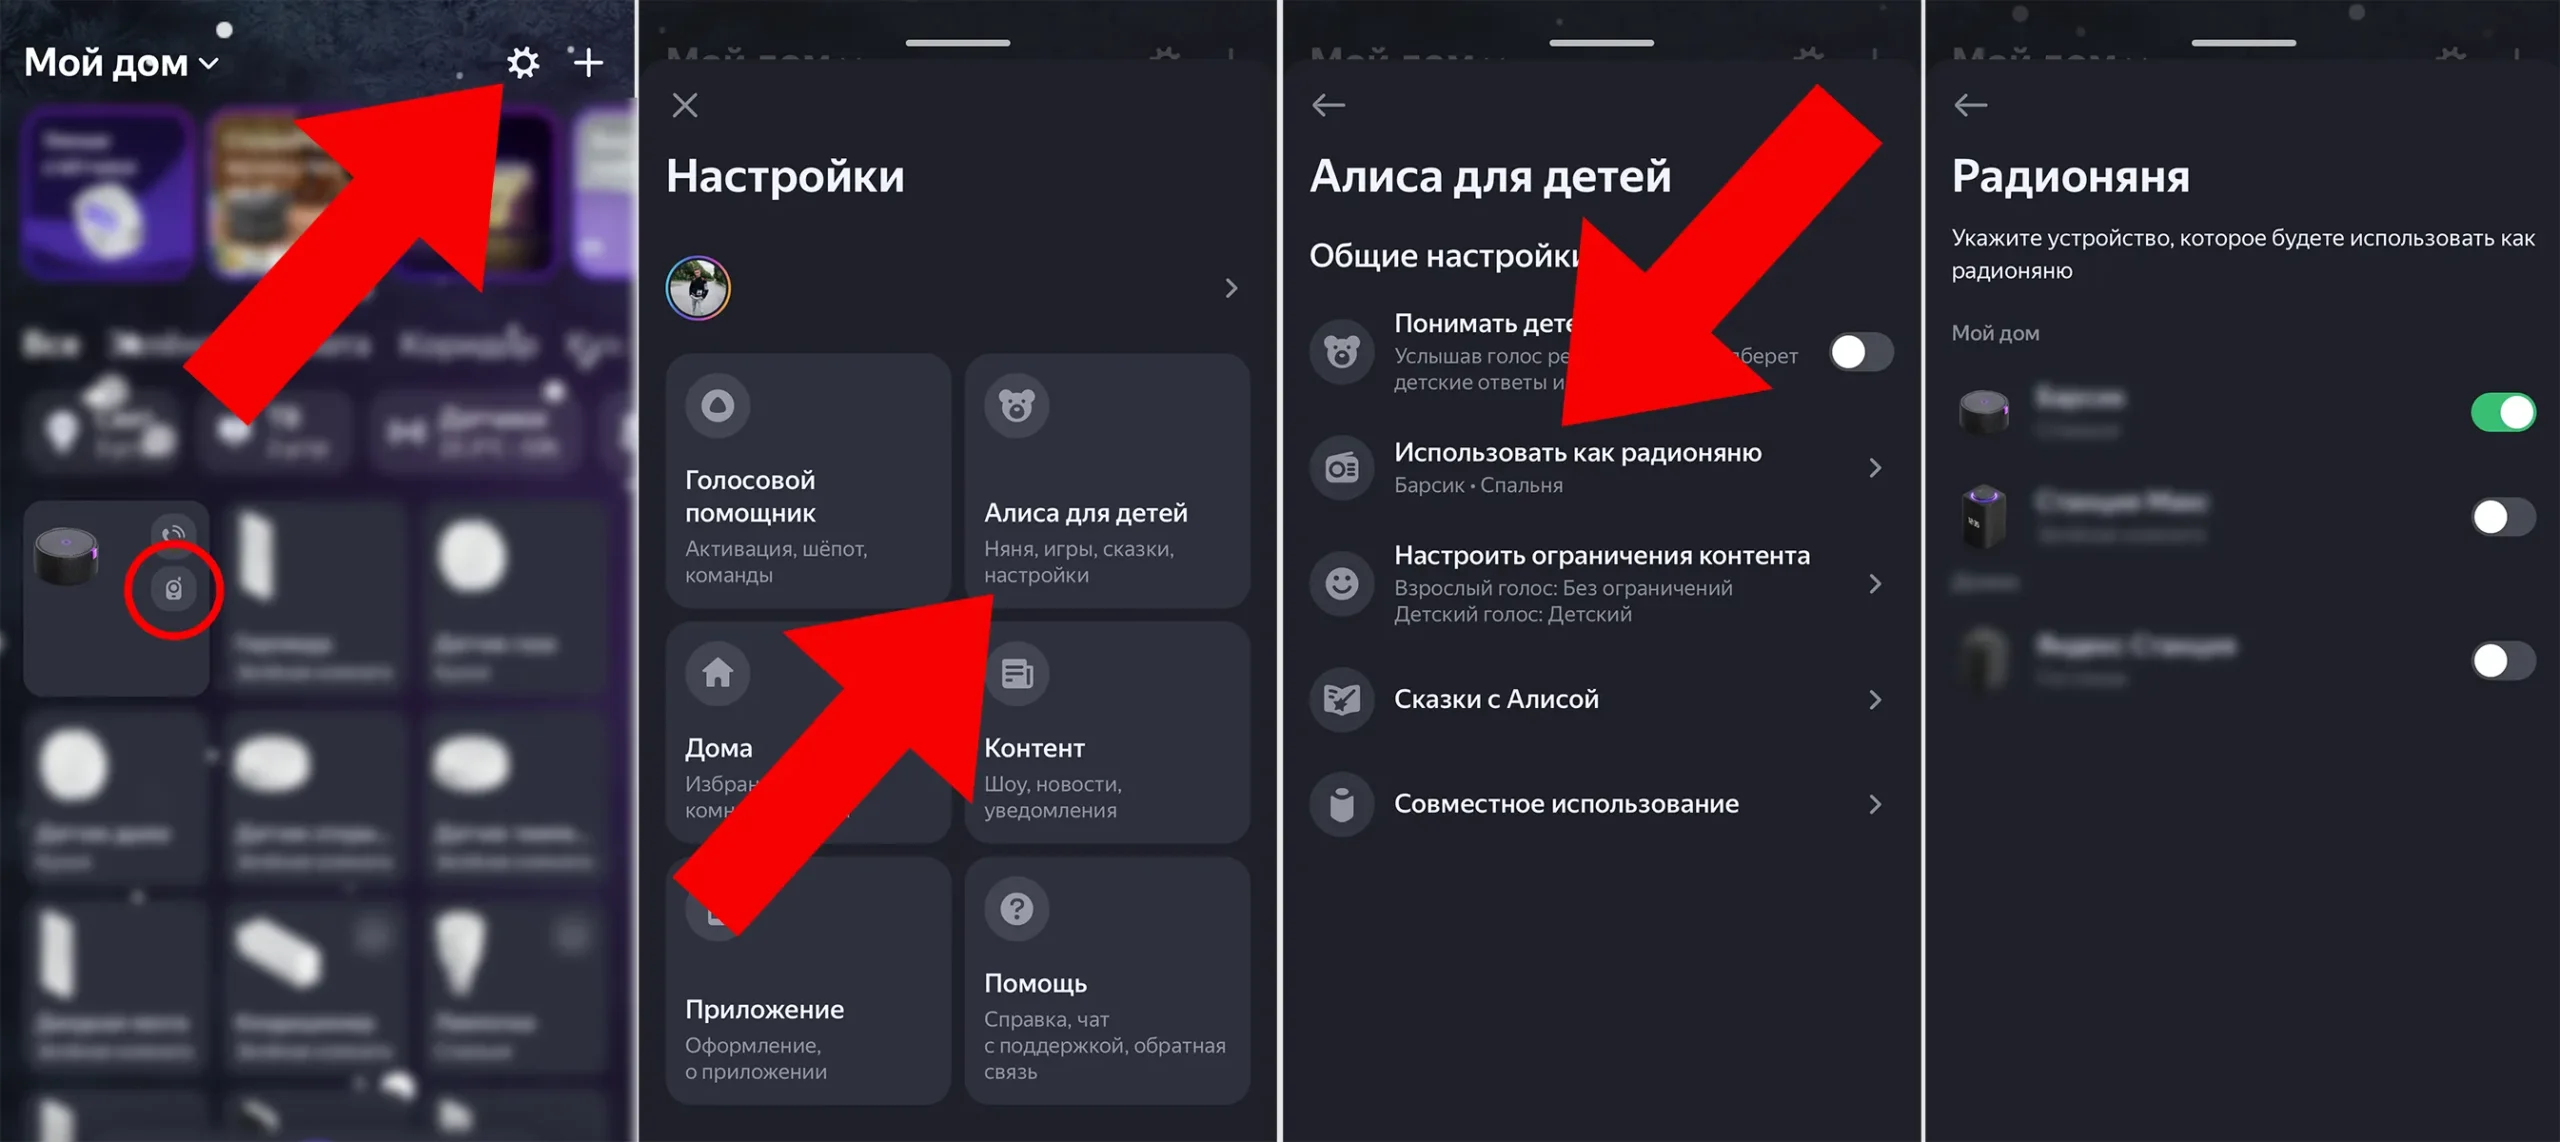 Как настроить радионяню на Яндекс Станции в приложении Умный дом с Алисой